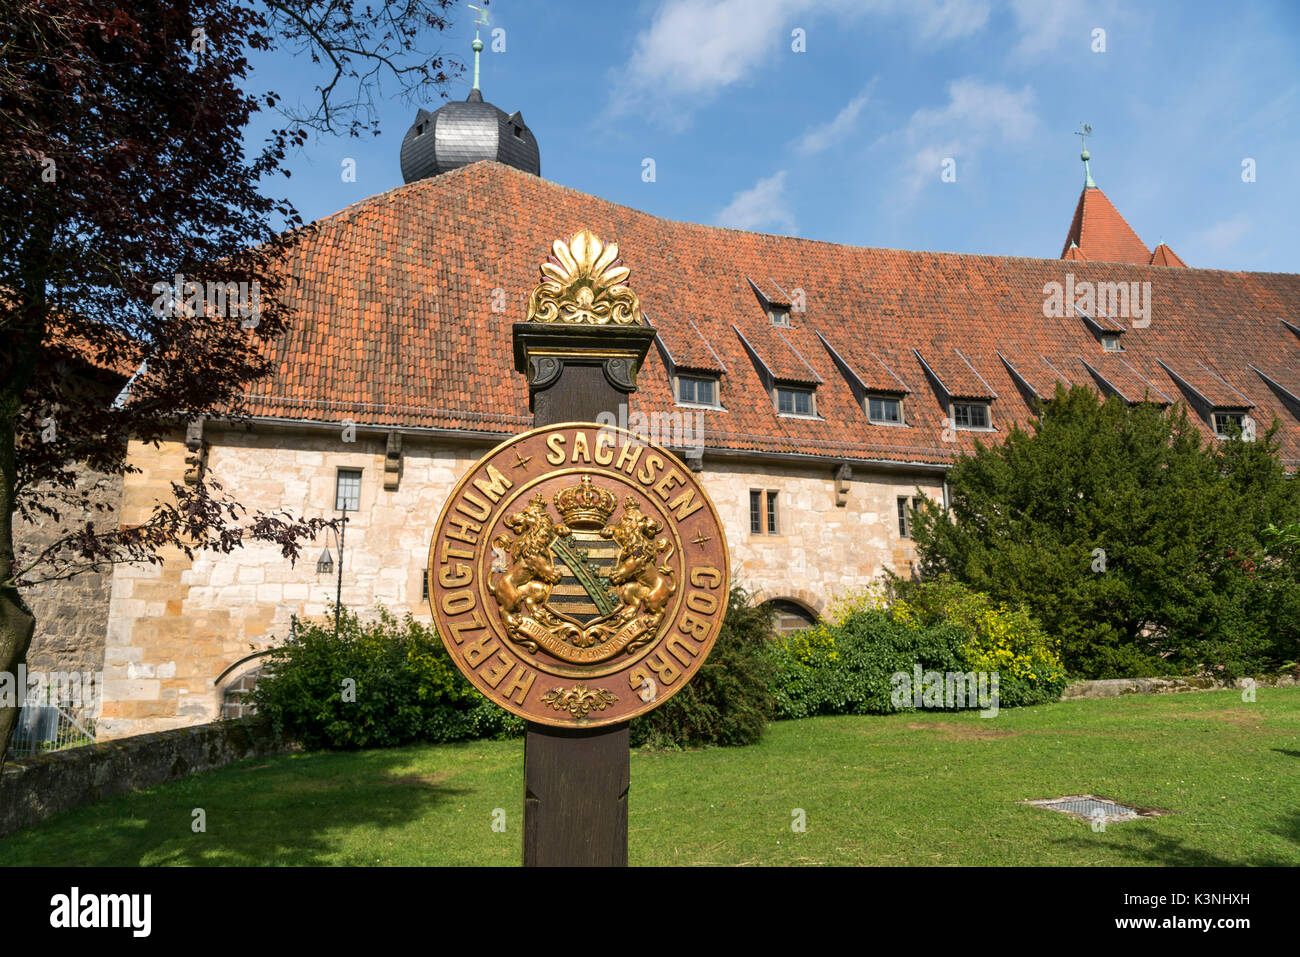 Wappen  Herzogtum Sachsen Coburg,  Veste Coburg  in Coburg, Oberfranken, Bayern, Deutschland  |  Coat of arms  Herzogtum Sachsen Coburg, Veste Coburg, Stock Photo